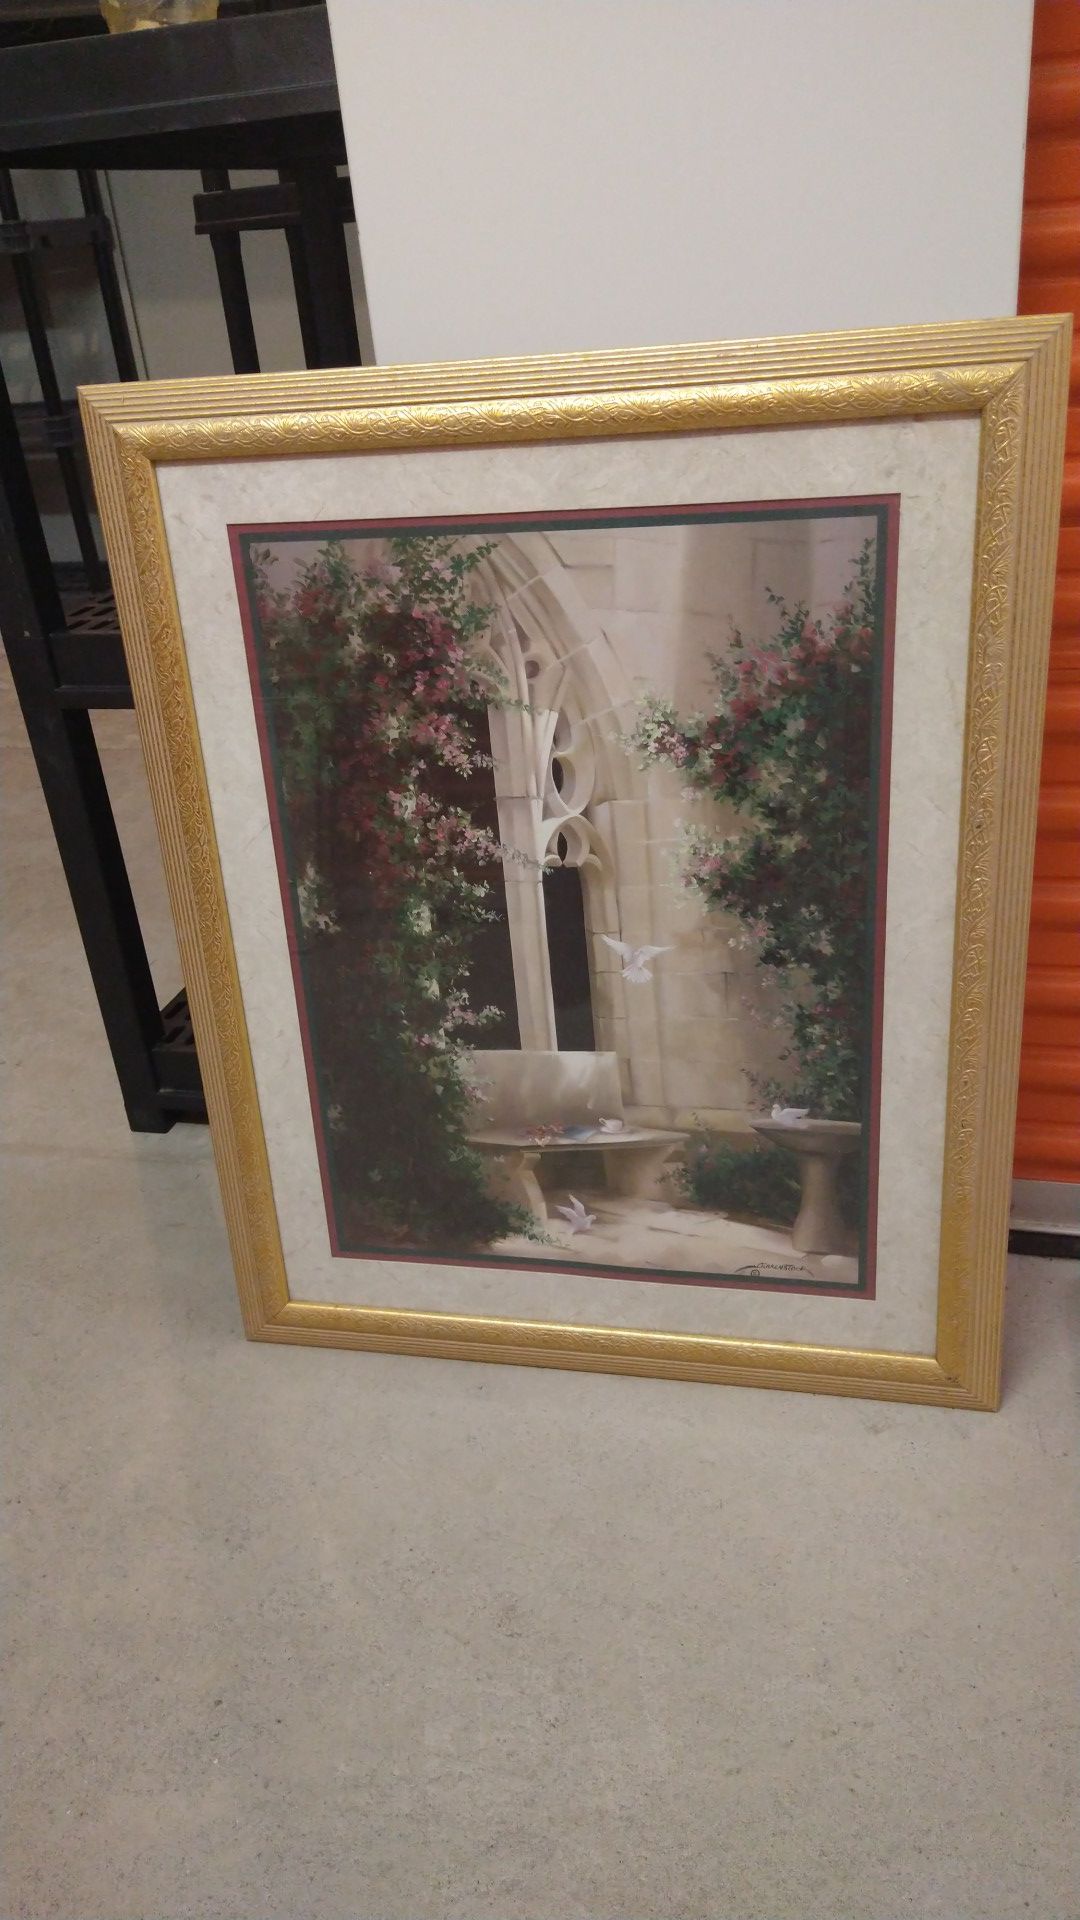 Birkenstock framed picture